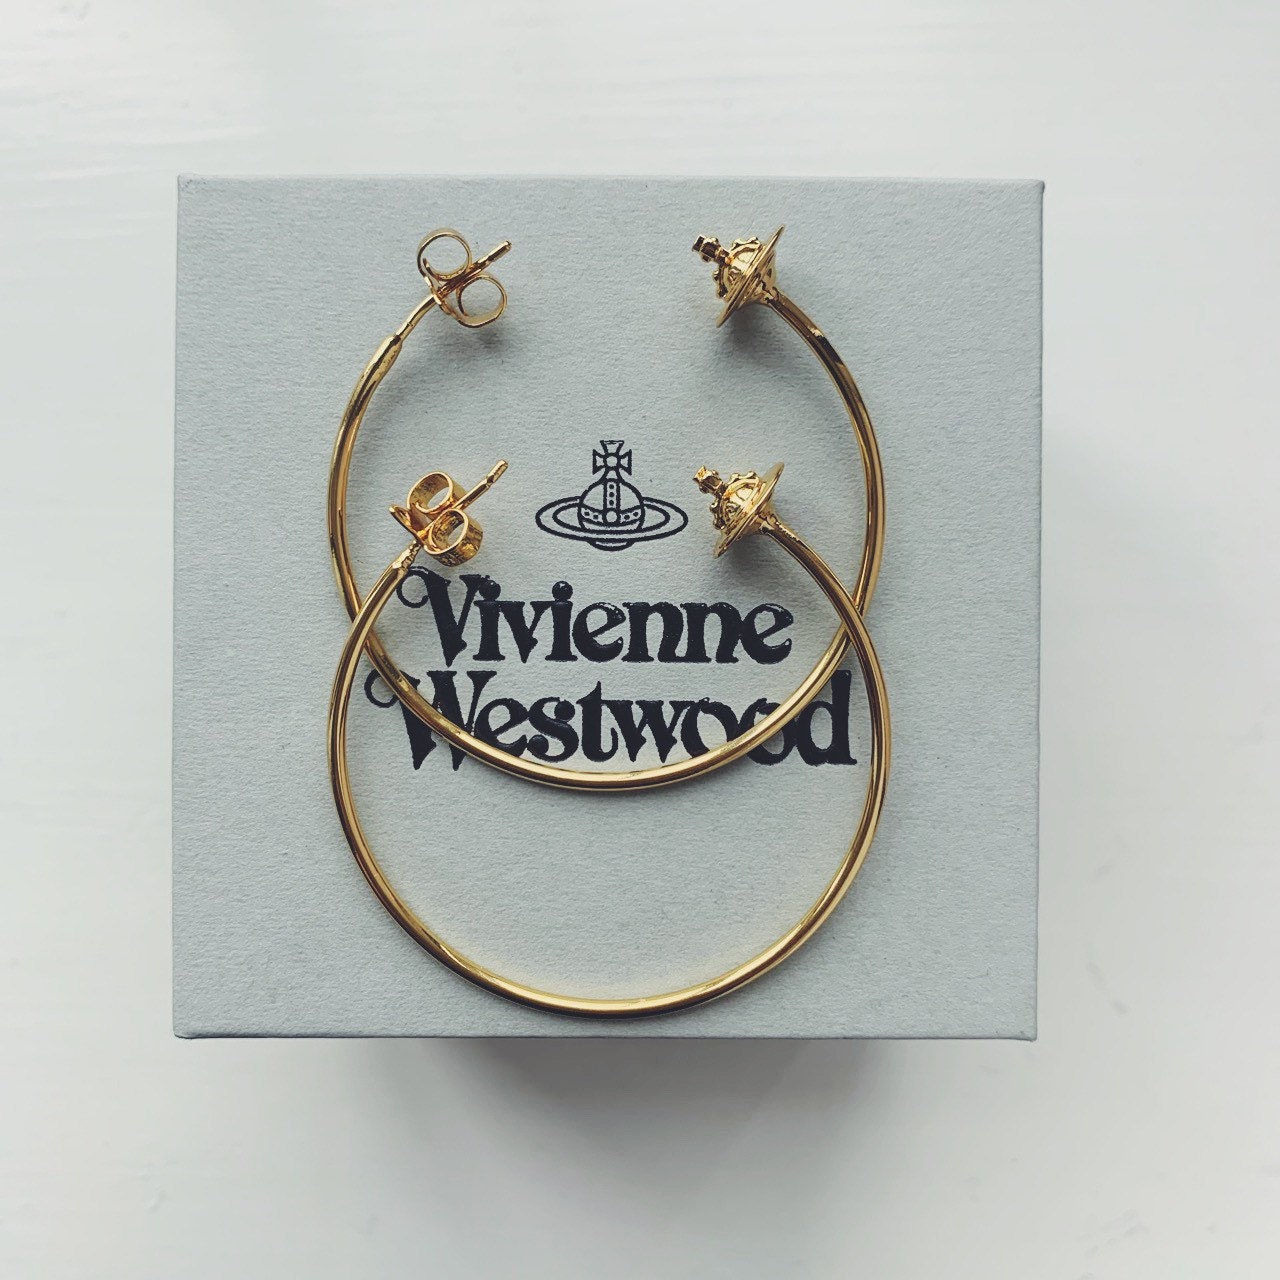 Vivienne Westwood Gold Hoop Earrings With Orb Ends - Etsy UK